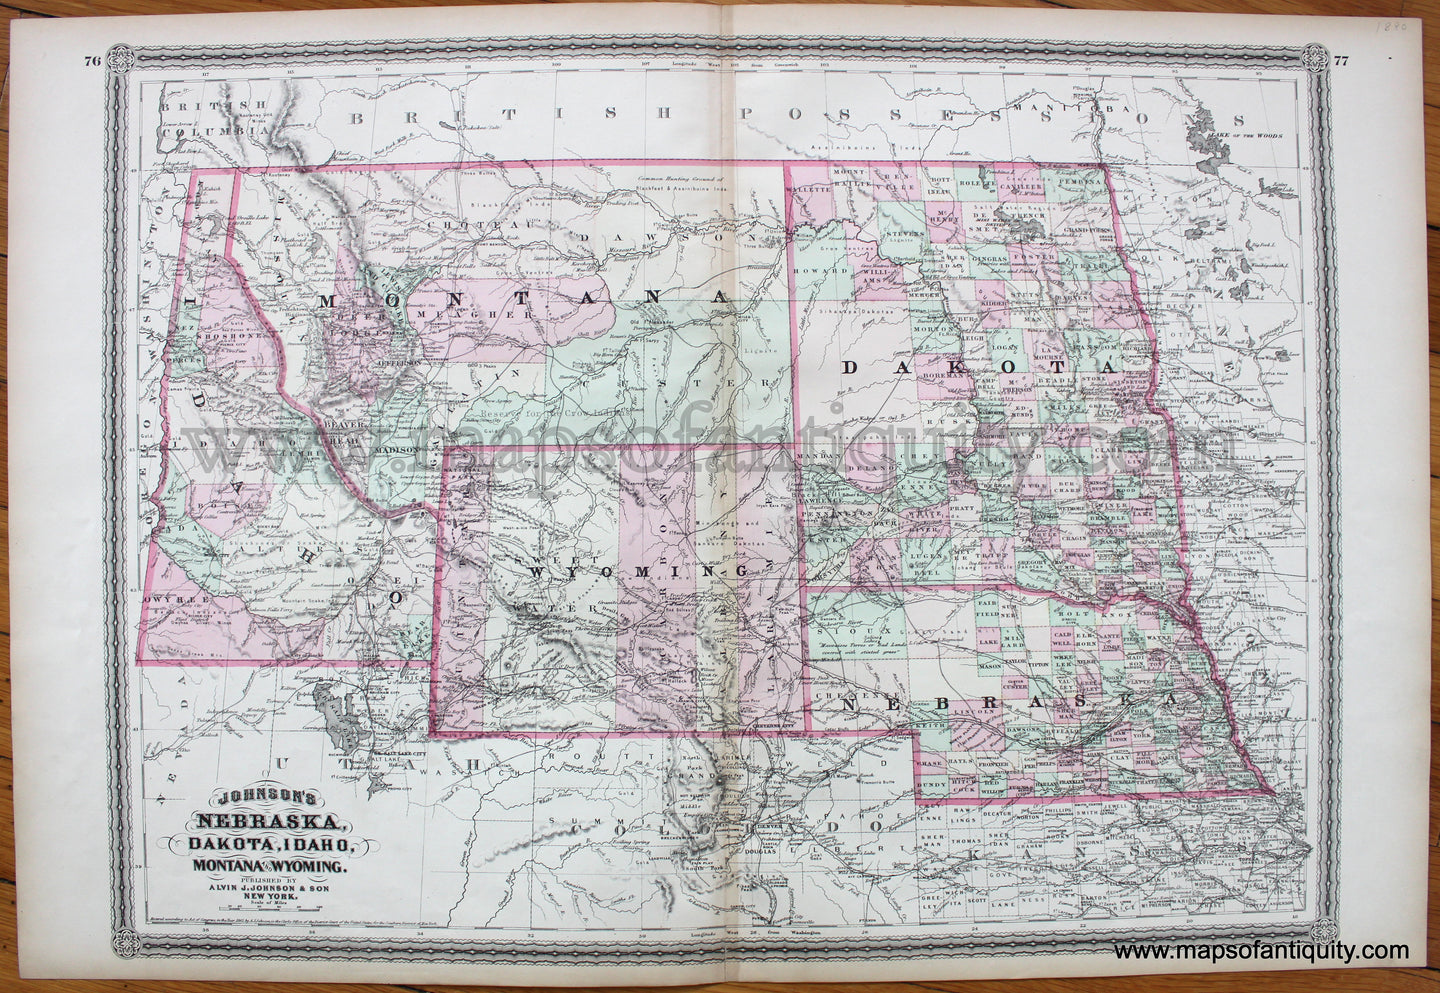 Antique-Map-Nebraska-Dakota-Idaho-Montana-and-Wyoming-Johnson-1880-1800s-19th-century-Maps-of-Antiquity